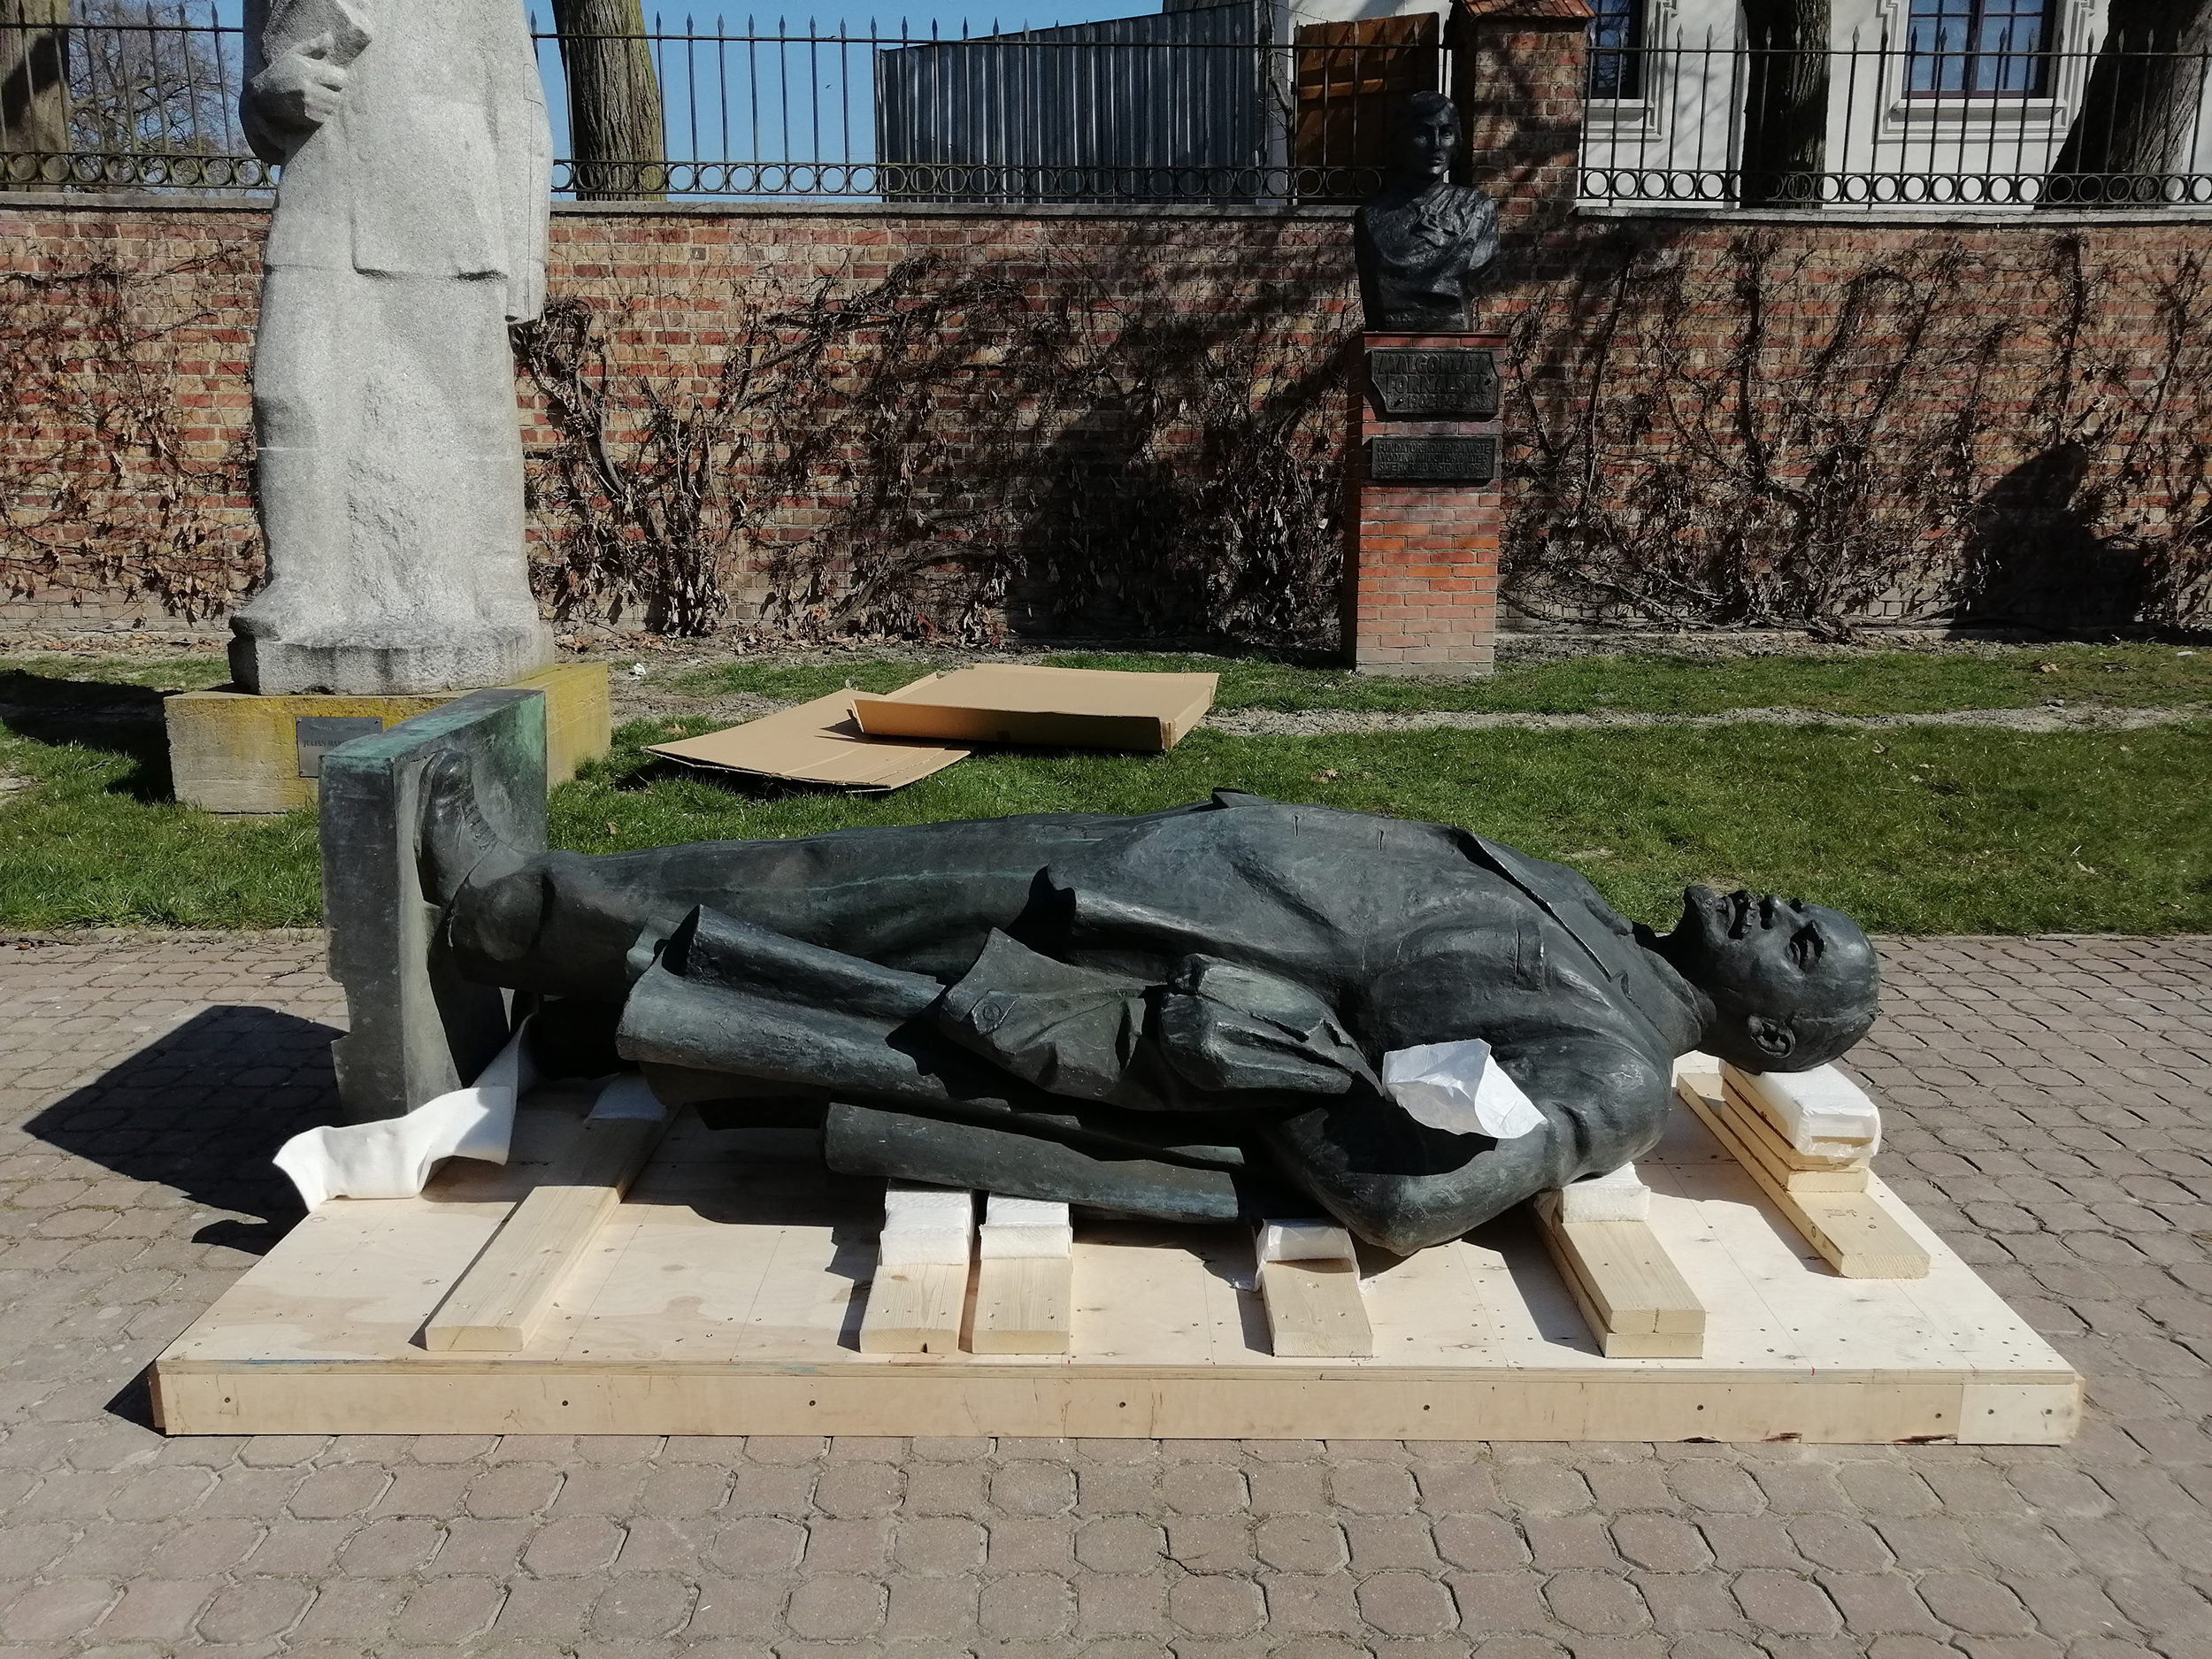 Pomnik Włodzimierza Lenina, postać całościowa. Rzeźba z brązu o wymiarach 260 x 120 x 75 cm ułożona poziomo na drewnianej podstawie.